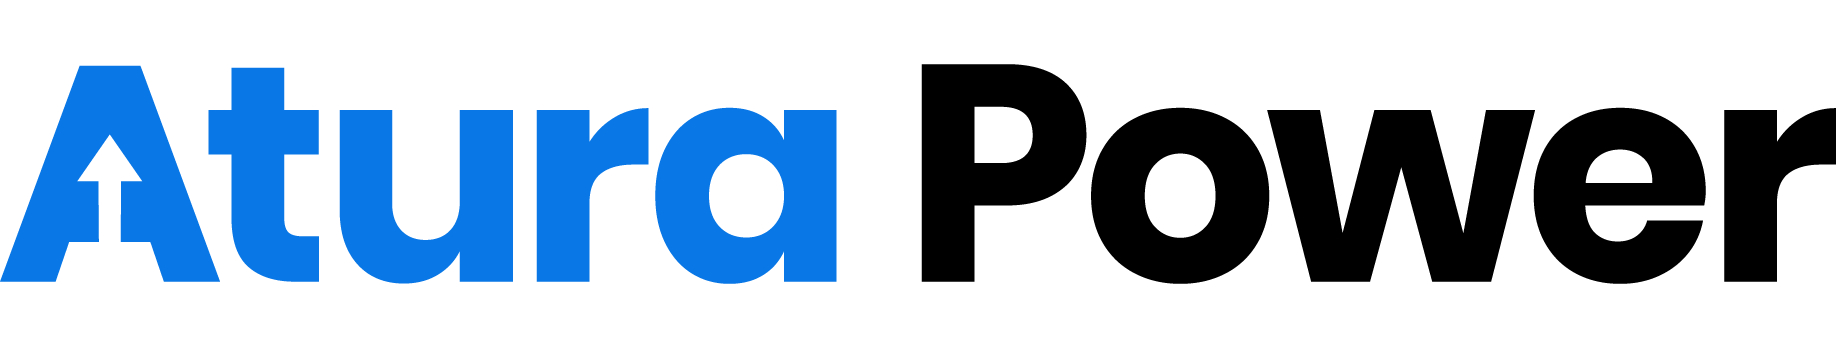 AturaPower-colour-Logo